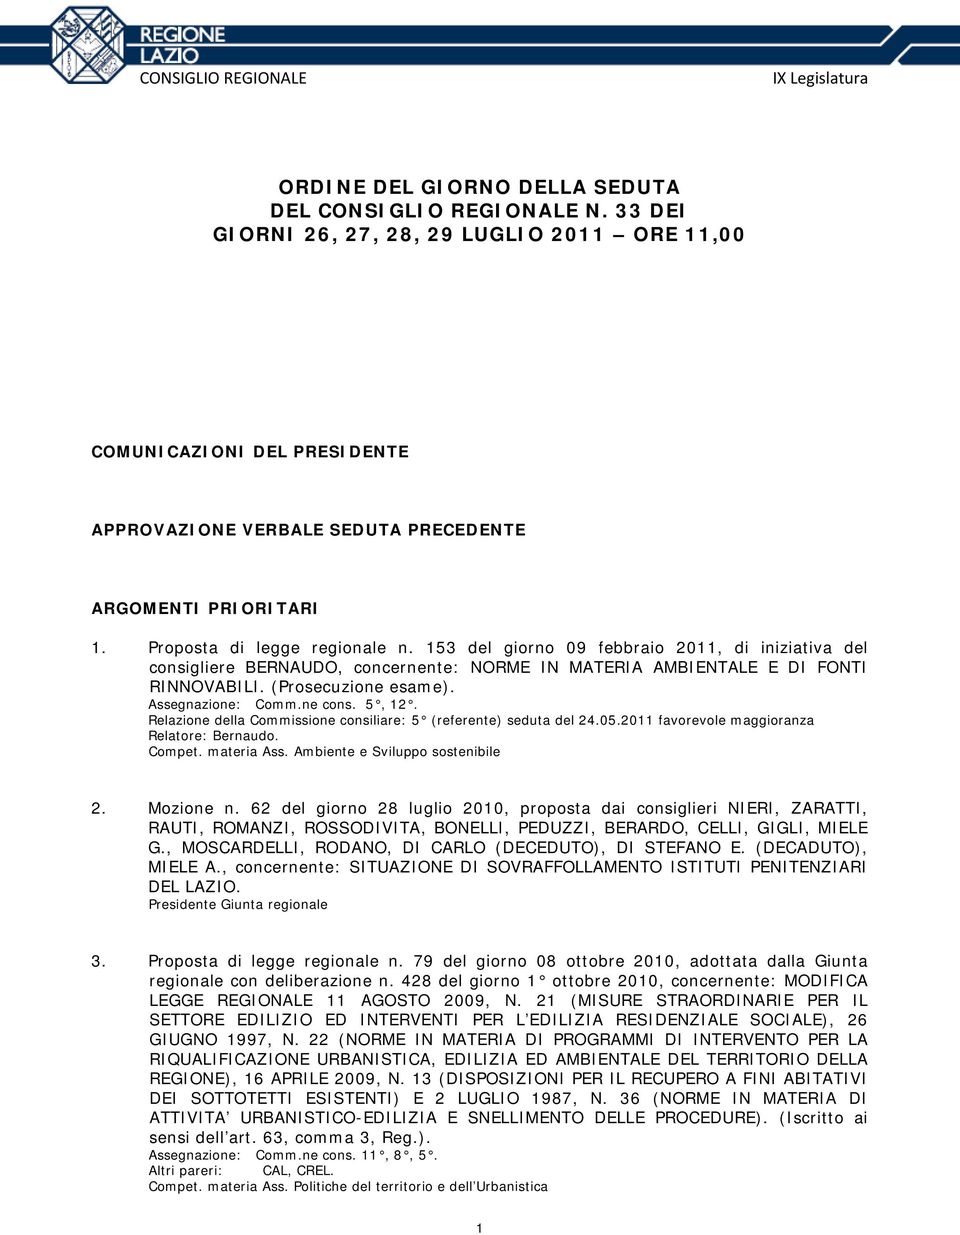 Assegnazione: Comm.ne cons. 5, 12. Relazione della Commissione consiliare: 5 (referente) seduta del 24.05.2011 favorevole maggioranza Relatore: Bernaudo. Compet. materia Ass.